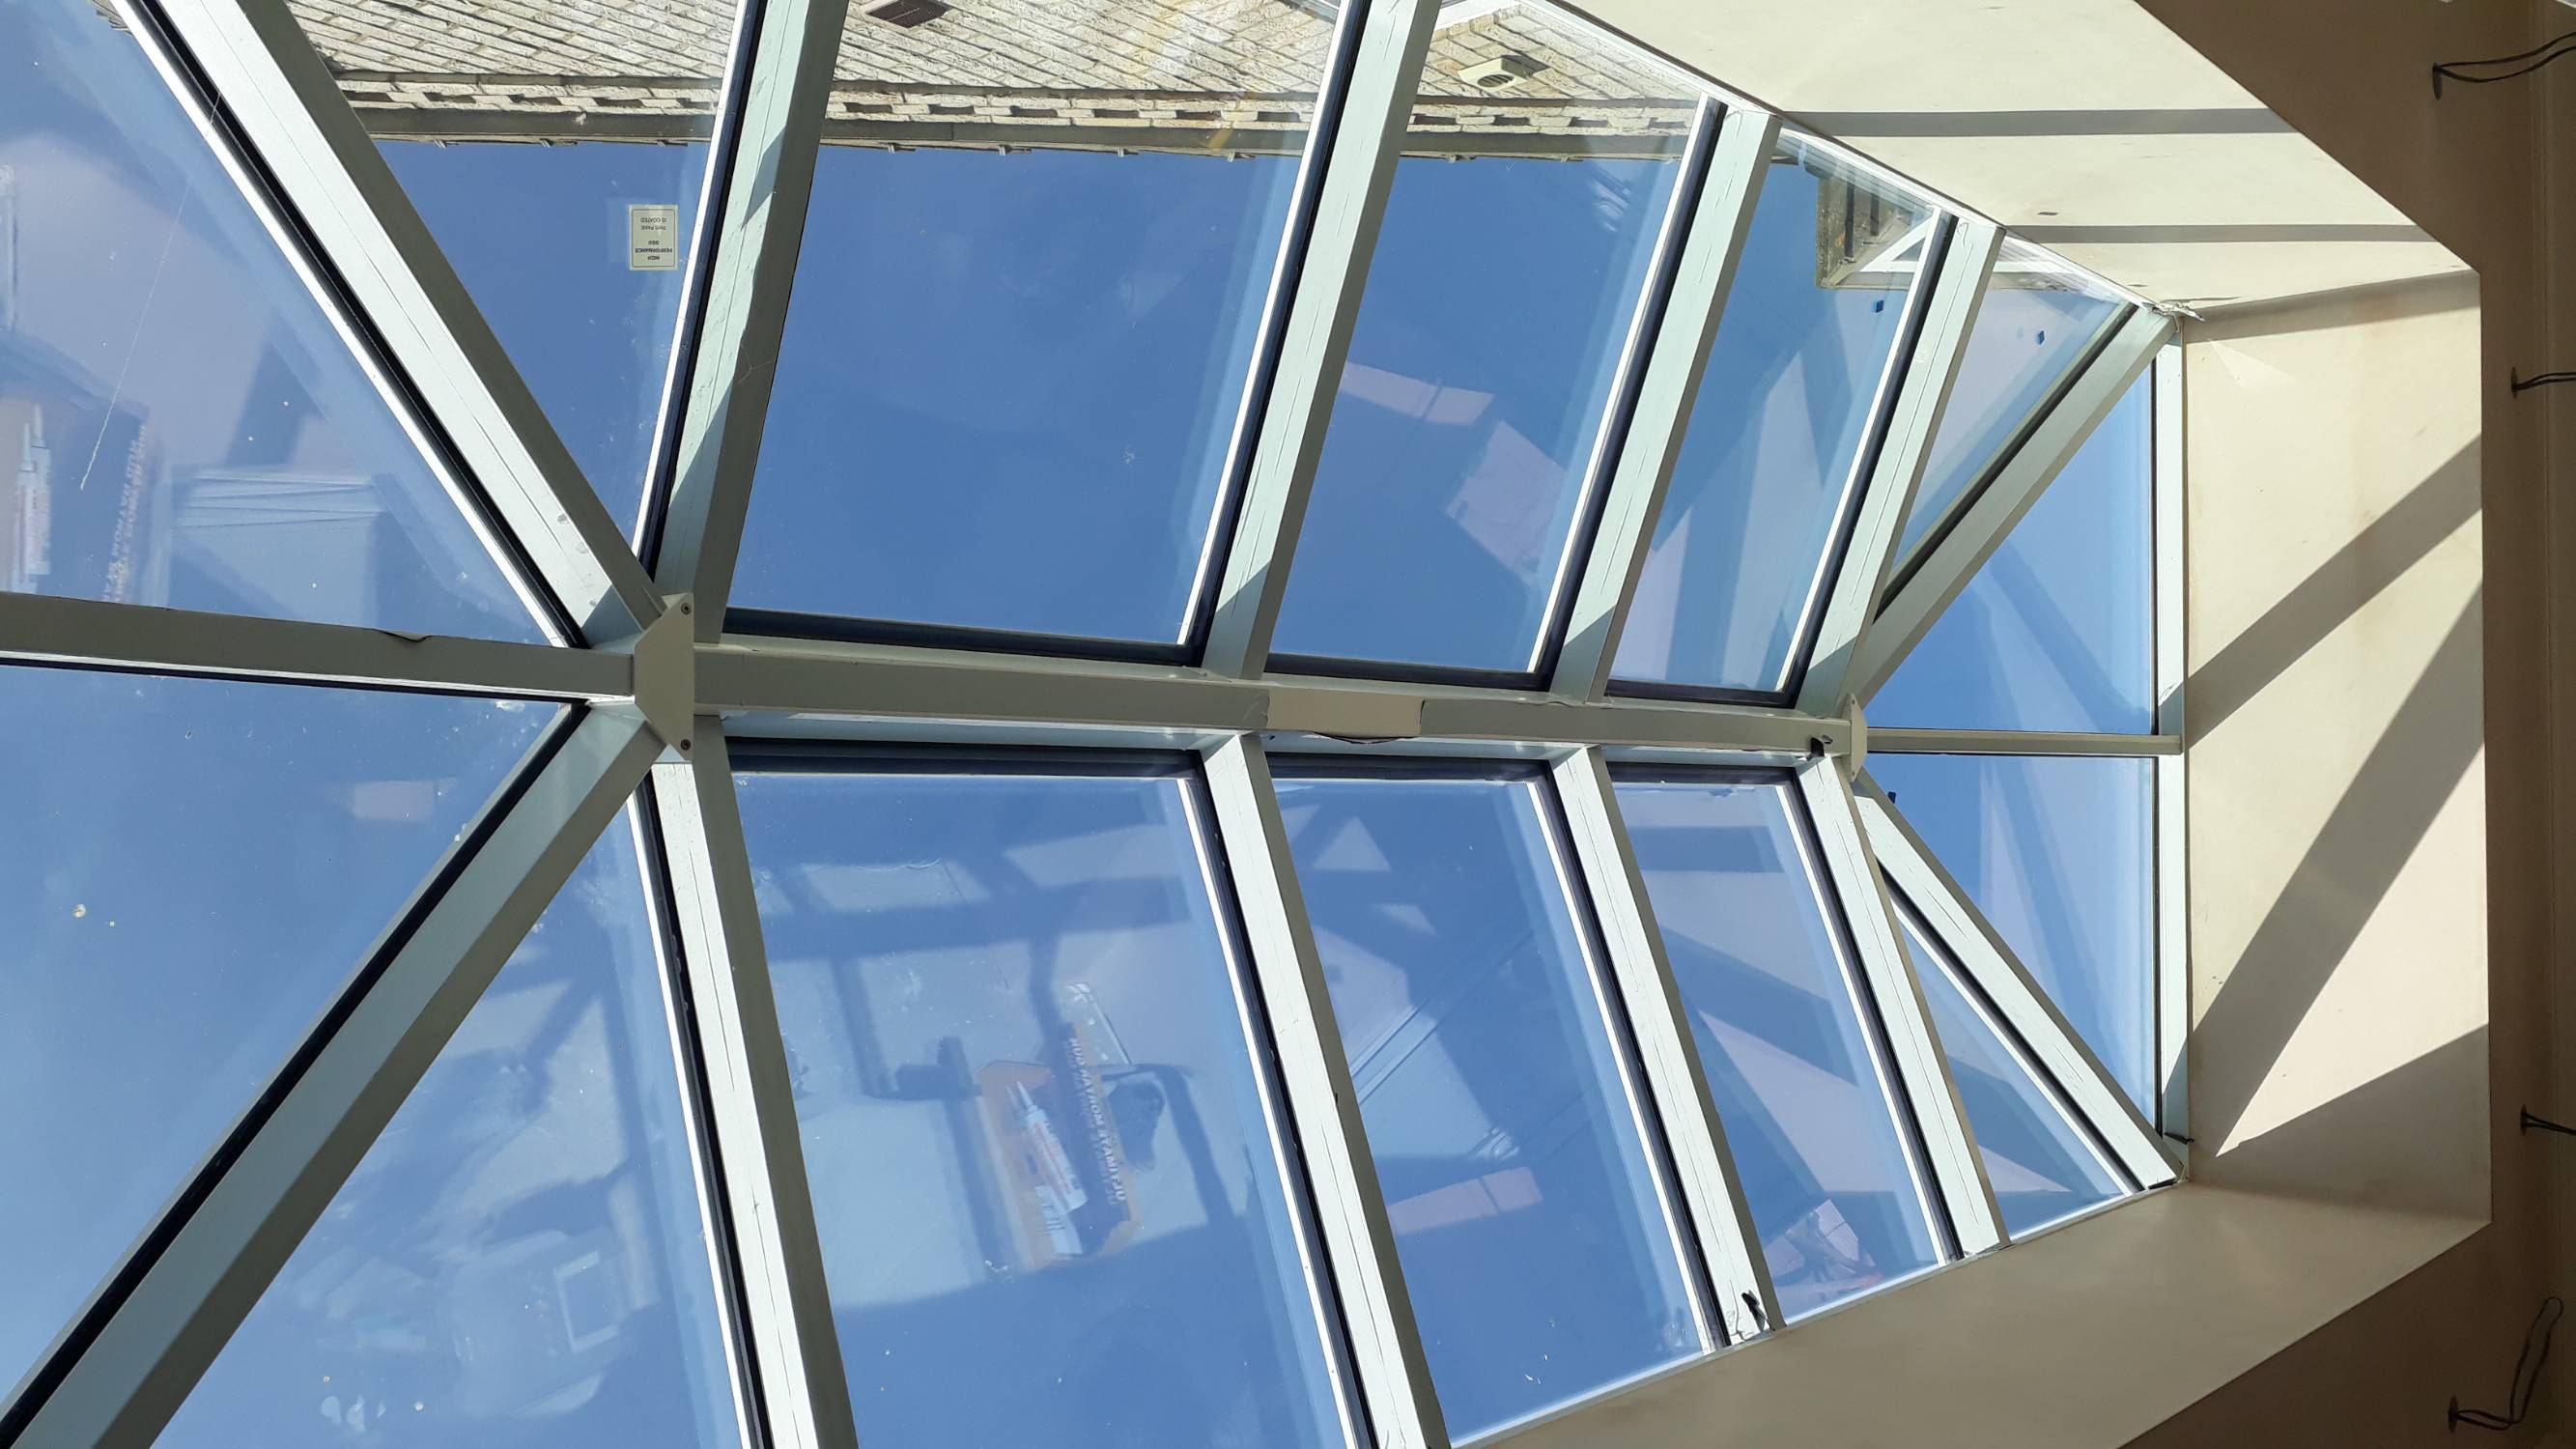 Kestrel Aluminium Roof Lantern System - Aluminium rooflight system